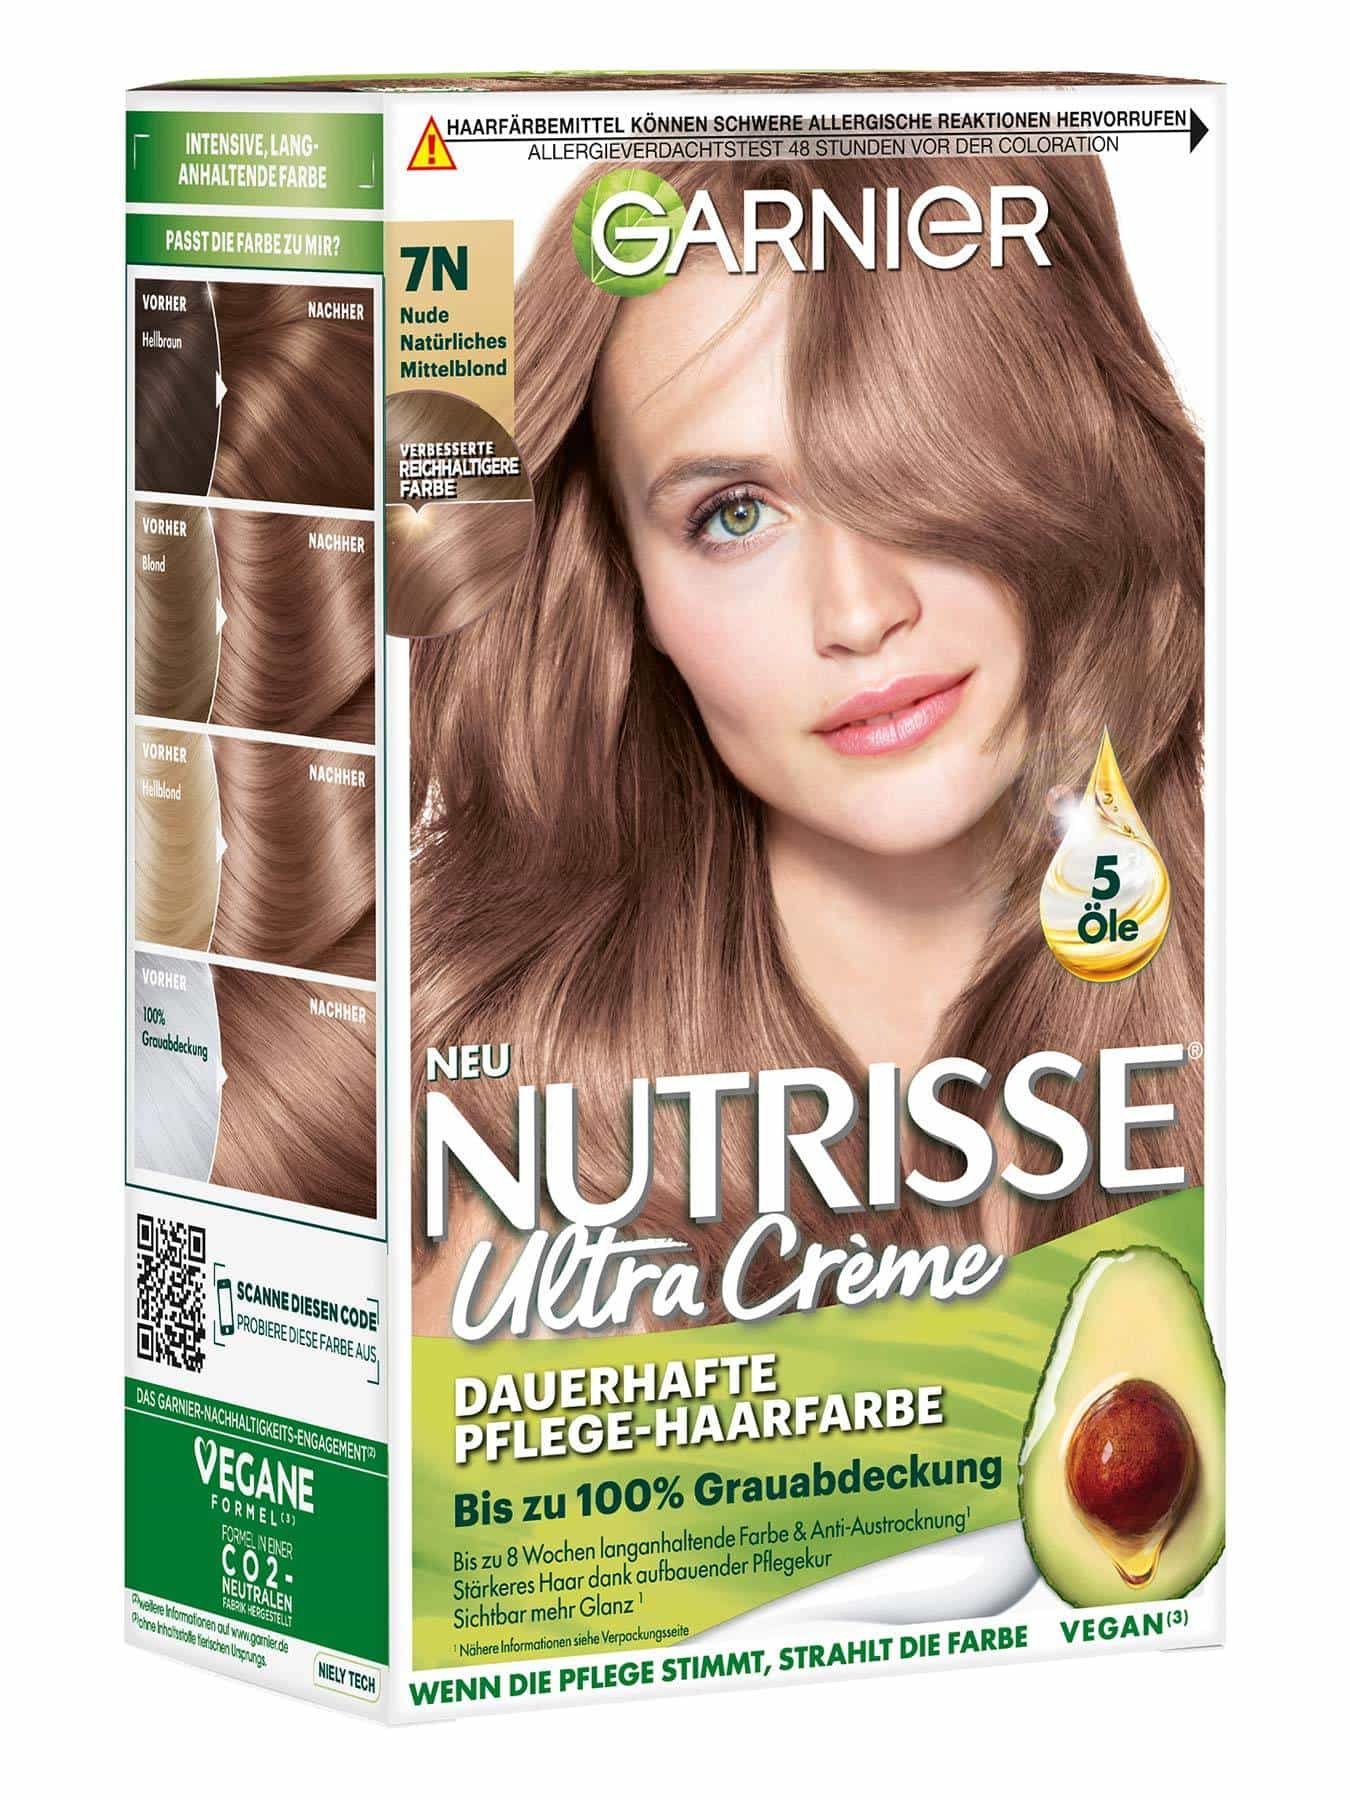 Nutrisse Creme 7N Nude Natürliches Mittelblond - Produktabbildung